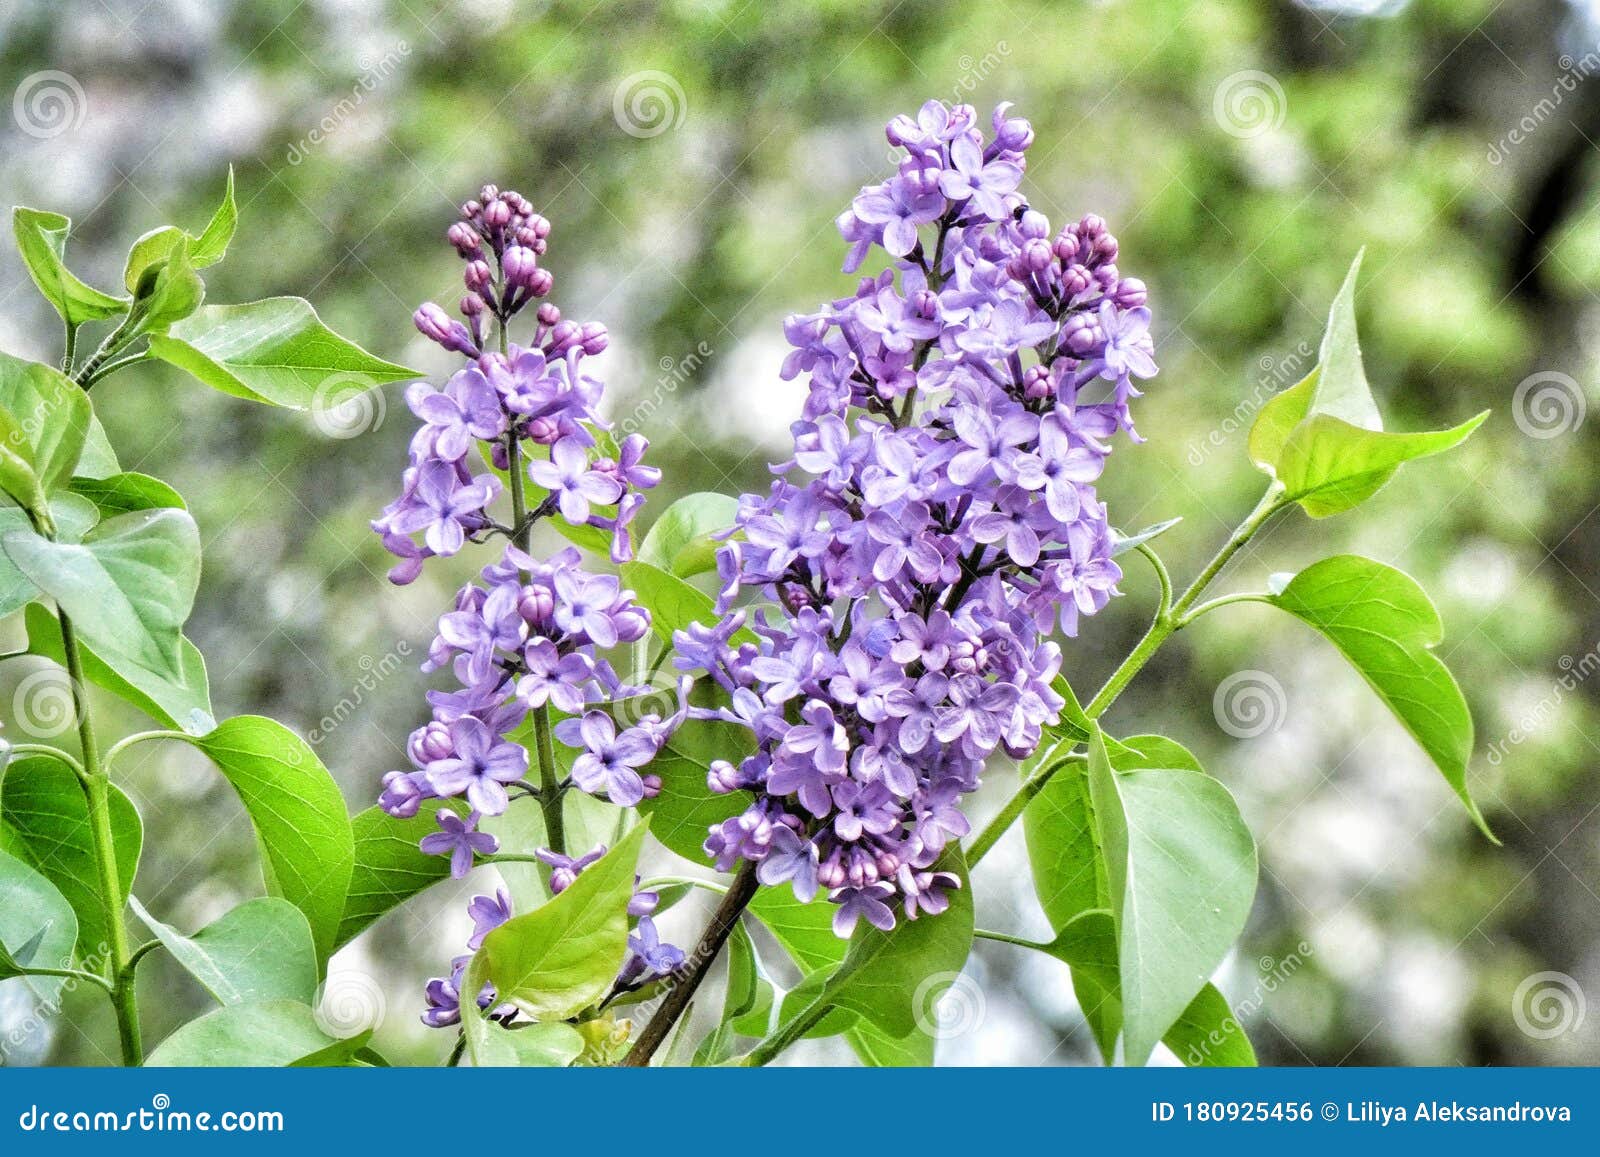 绿叶背景上的美丽紫丁香花自然壁纸库照片库存照片 图片包括有自然壁纸库照片 绿叶背景上的美丽紫丁香花